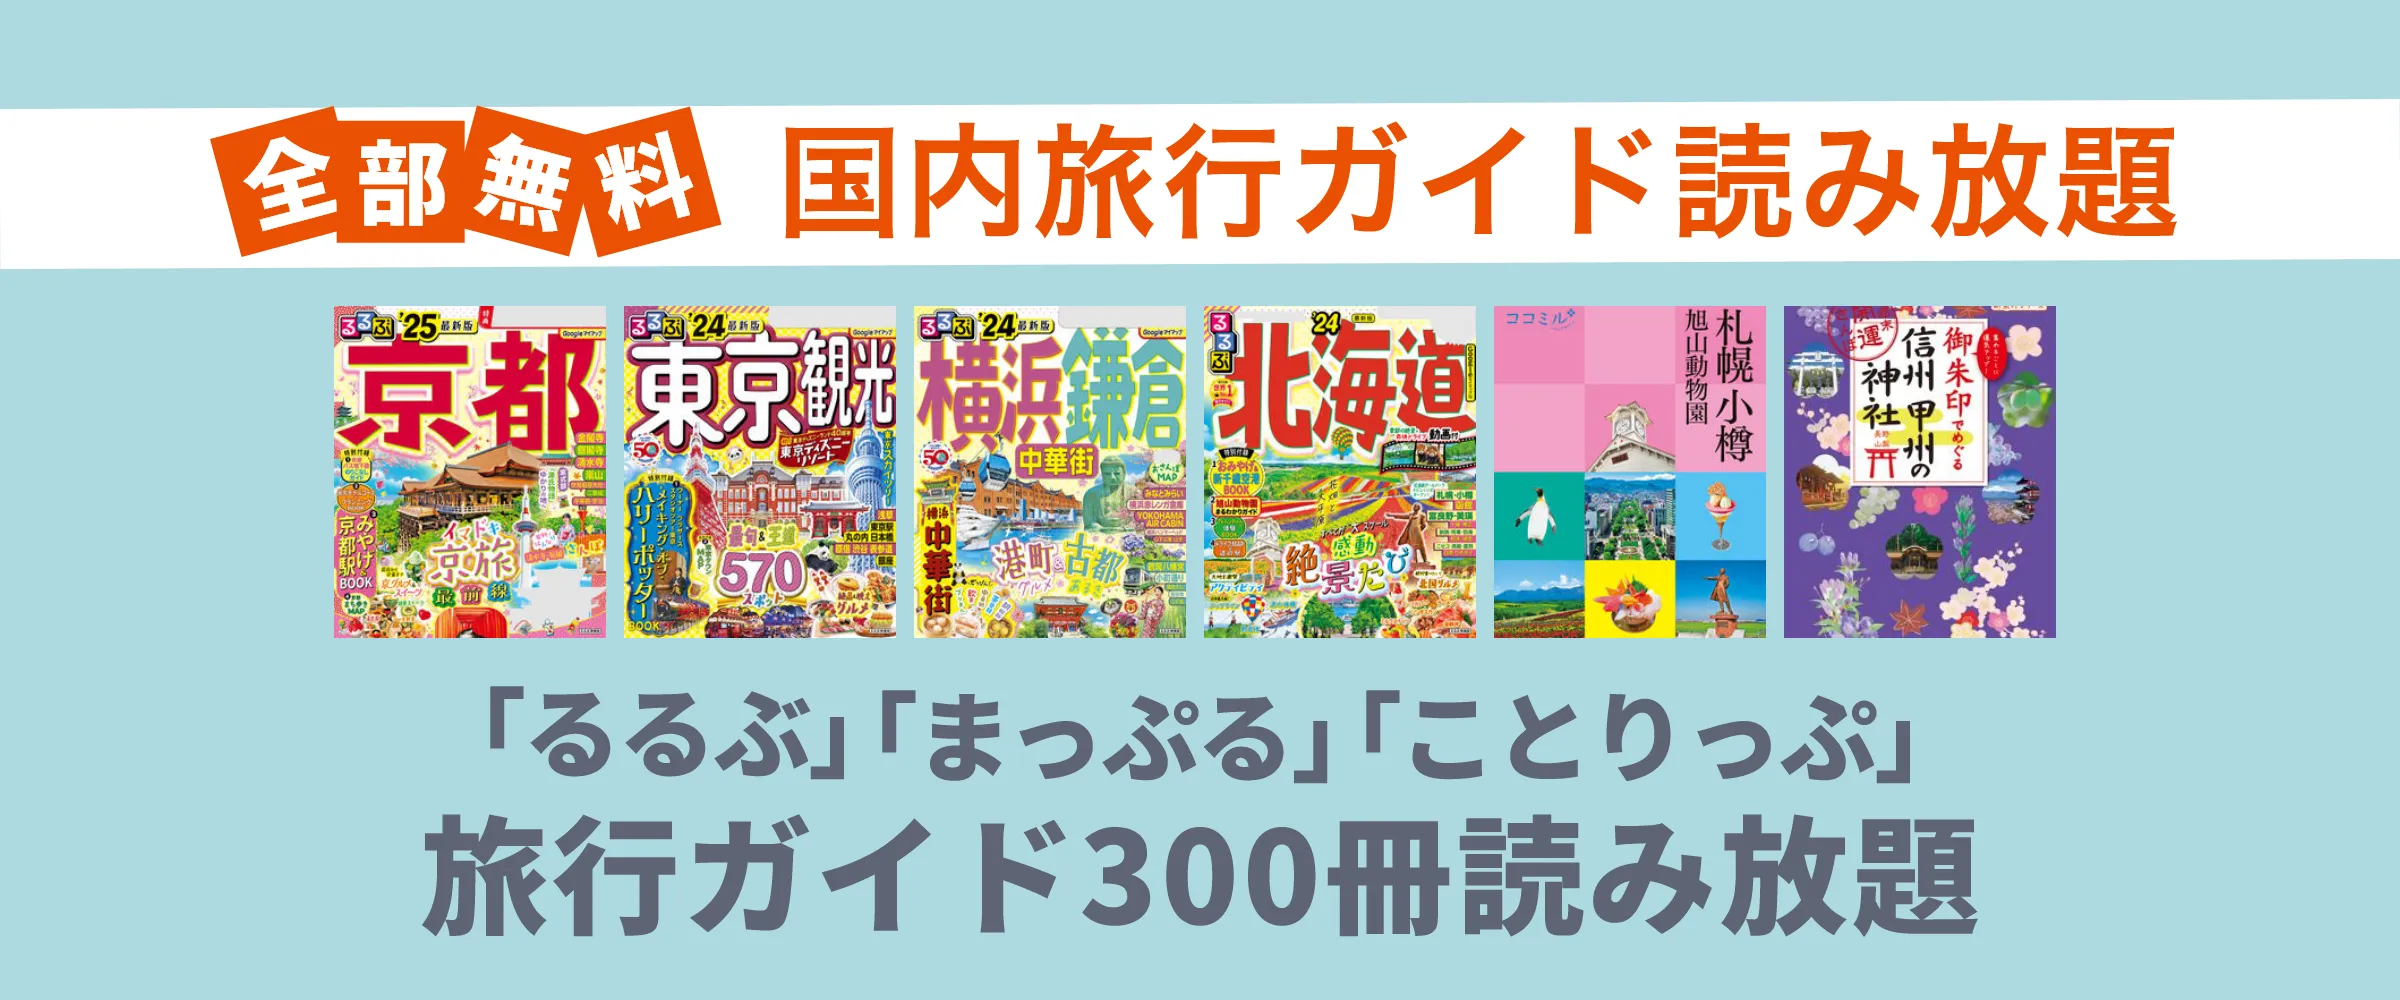 たった550円でるるぶ、まっぷる、ことりっぷなど国内旅行雑誌200冊以上読み放題。最初の1ヵ月無料。